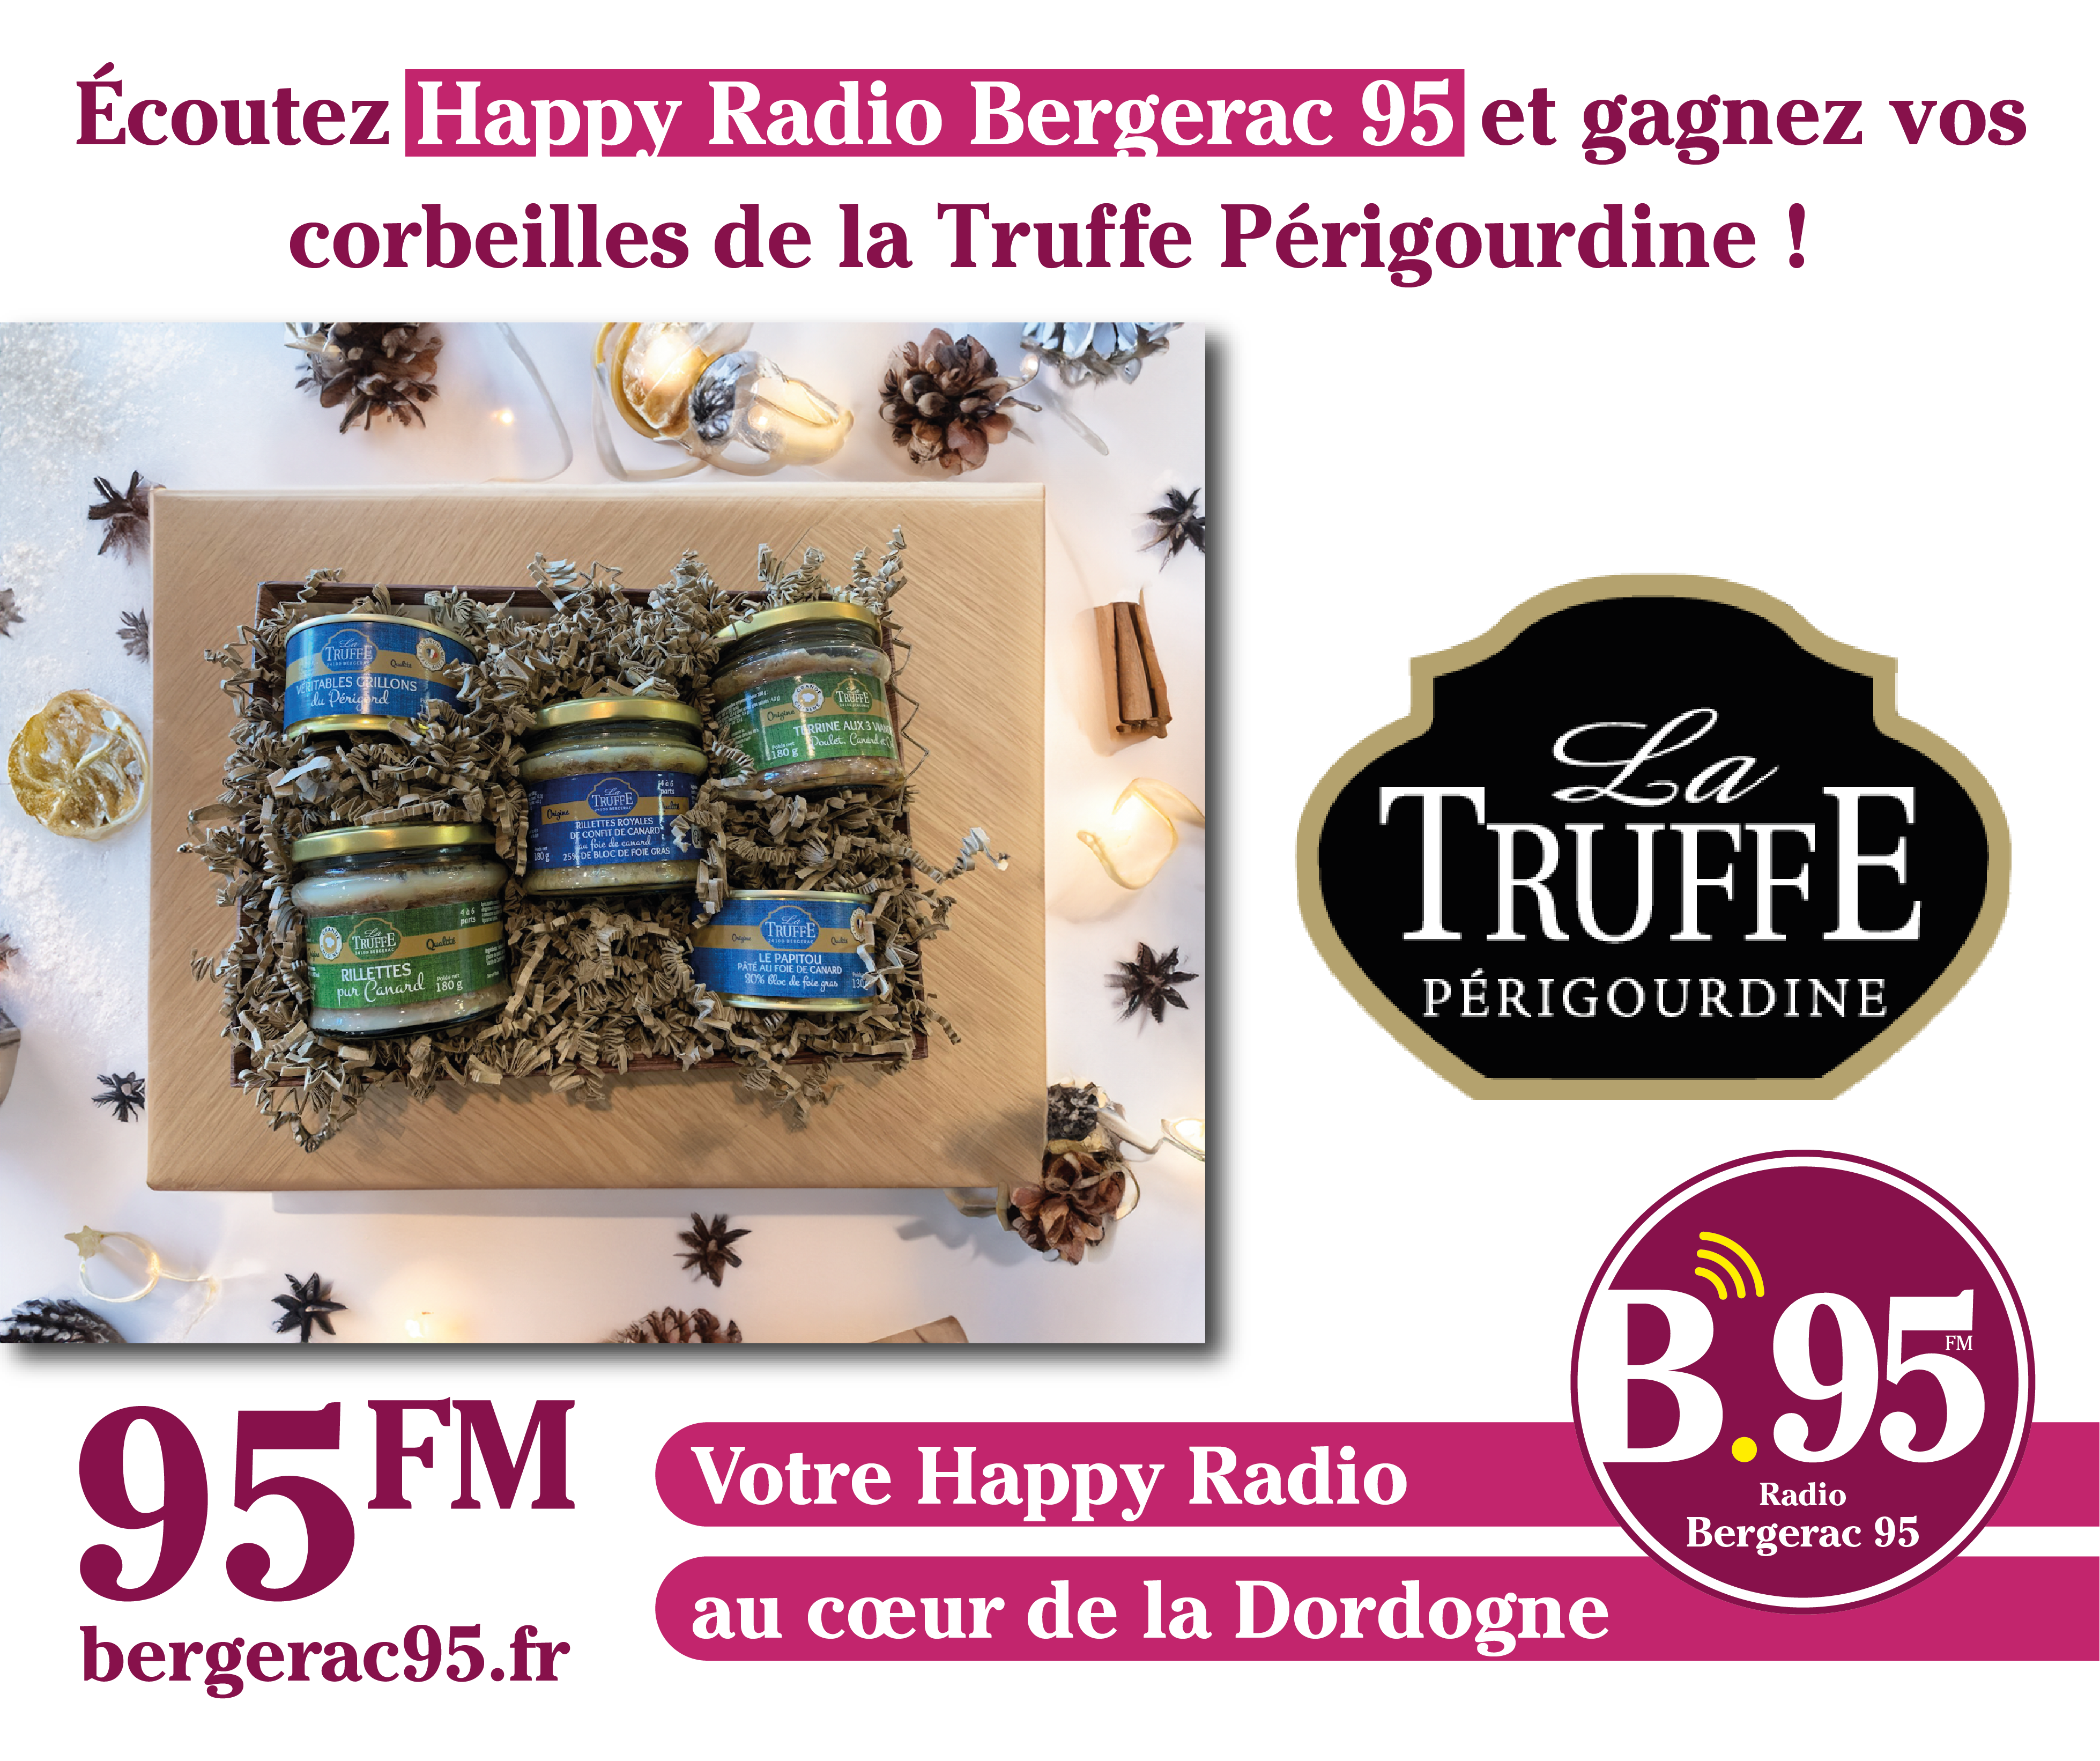 You are currently viewing Écoutez Bergerac 95 Happy Radio et gagnez vos corbeilles de la Truffe Périgourdine